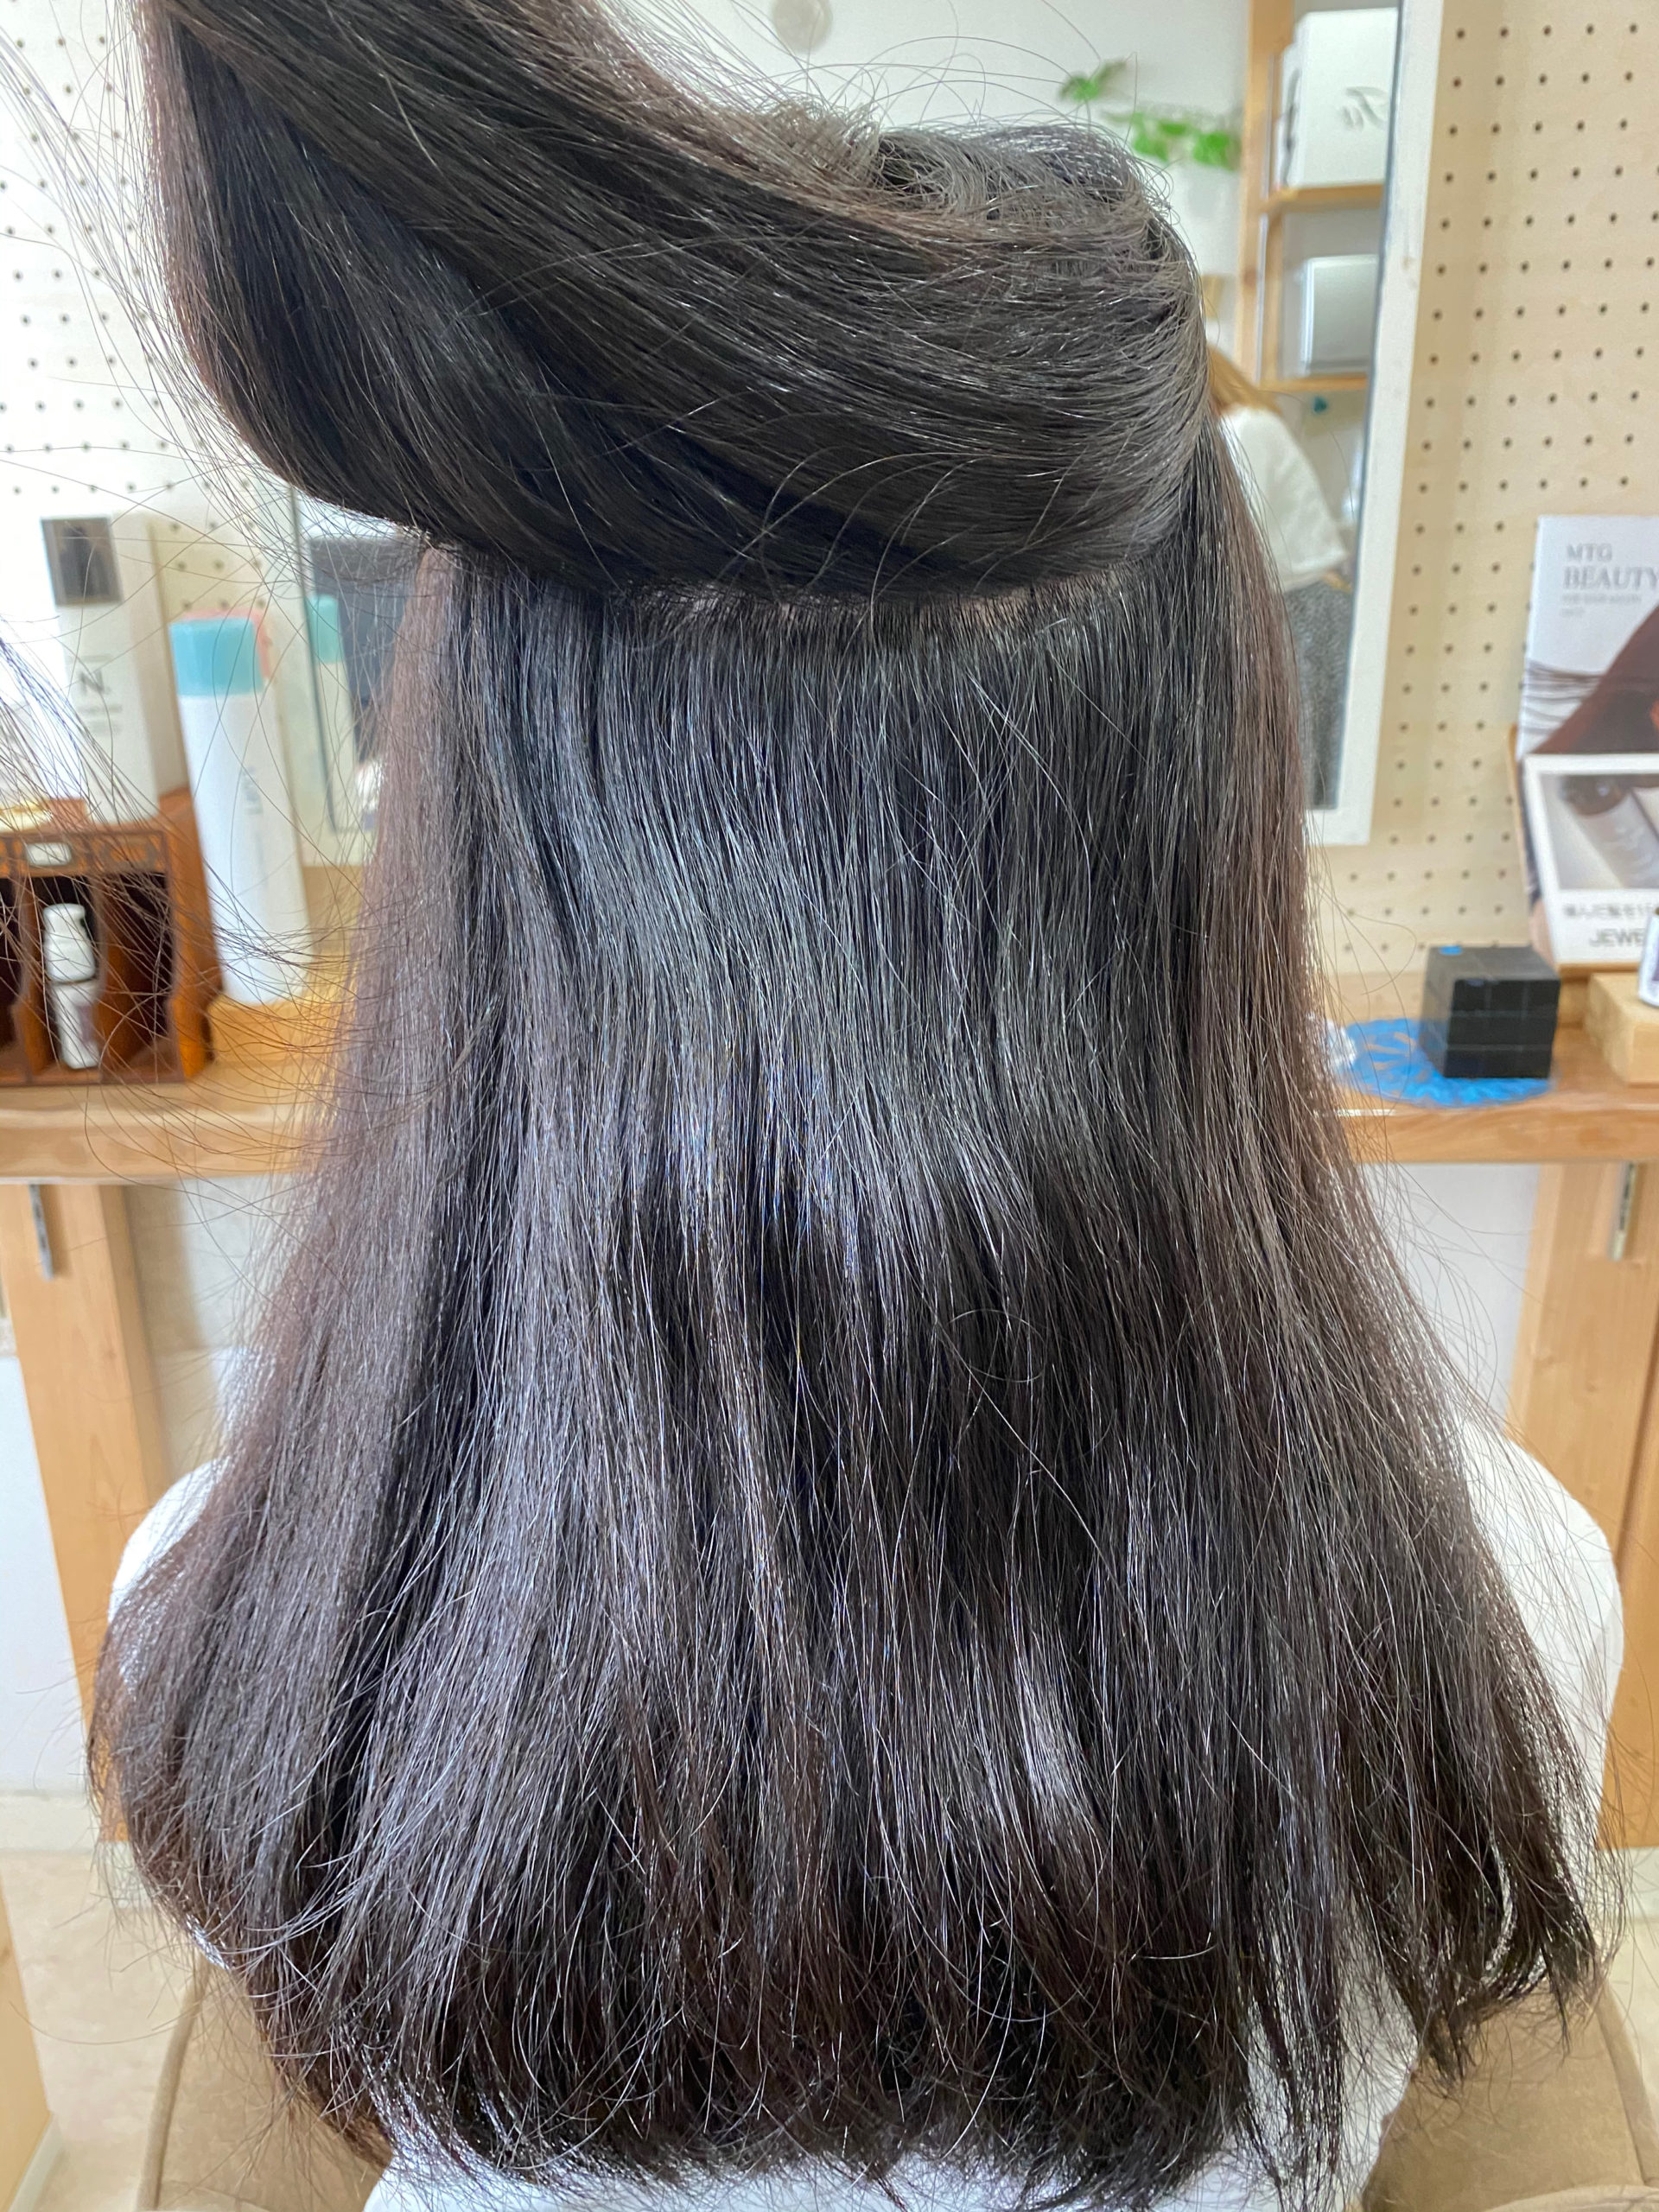 パサつきの気になる髪をジュエリーシステムシリーズ×縮毛矯正で艶髪。原宿・表参道『髪のお悩みを解決するヘアケア美容師の挑戦』